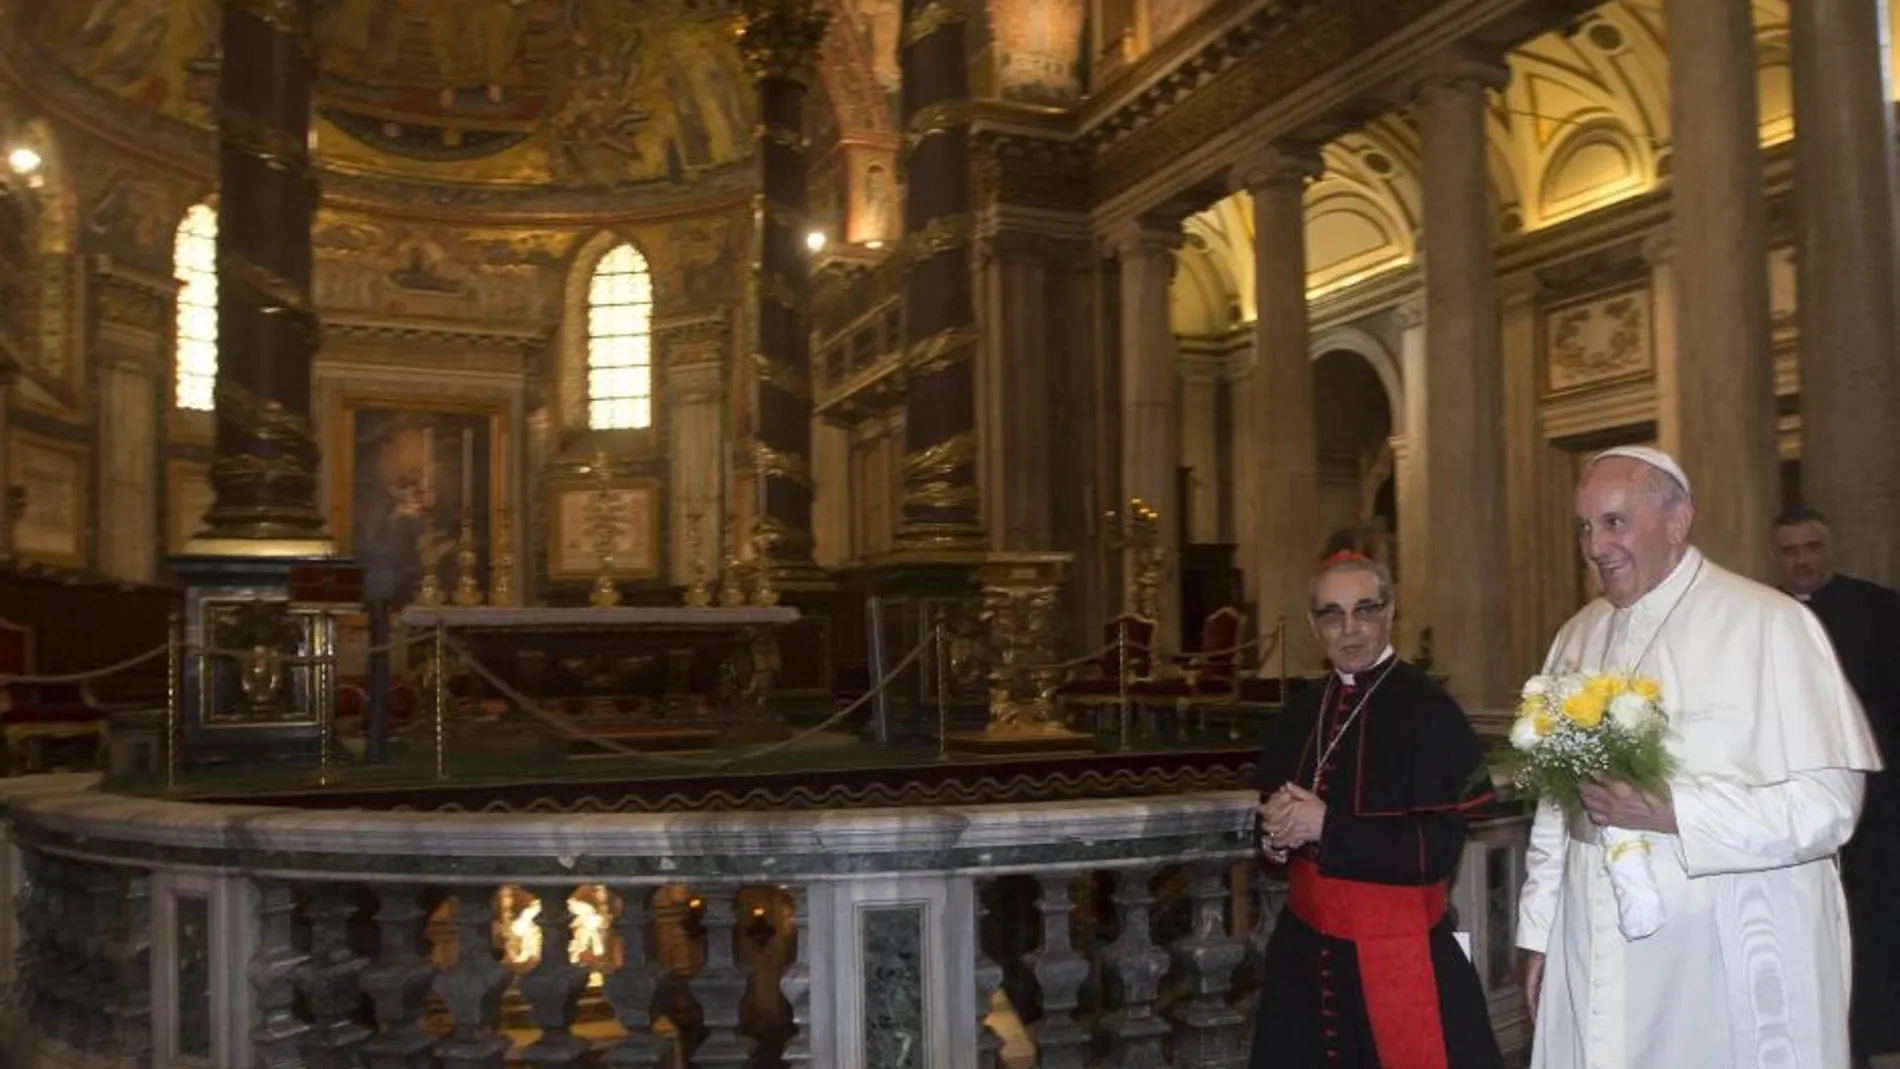 El papa visita la Basílica de Santa María la Mayor junto al cardenal español Santos Abril y Castelló en Roma, tras regreso de su viaje por América Latina.